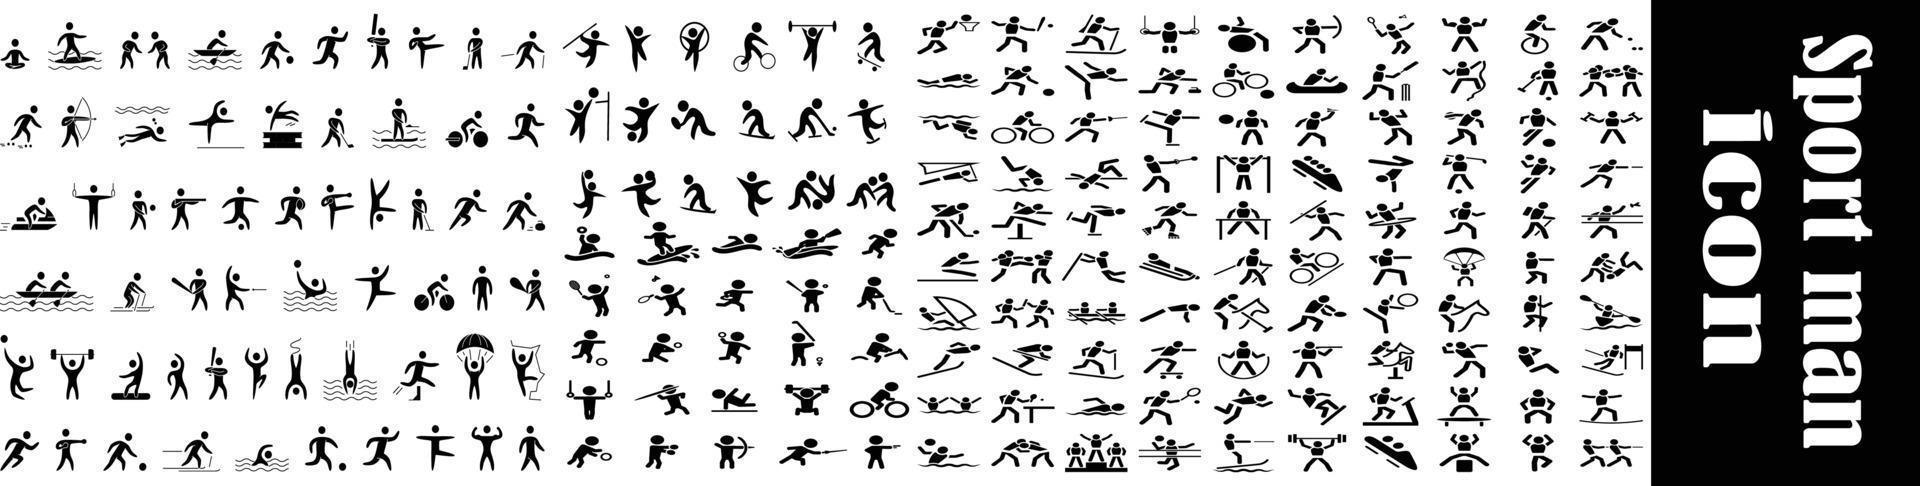 Cours. hommes et femmes en cours d'exécution, ensemble d'images vectorielles de silhouettes isolées, collection d'icônes de sport vecteur